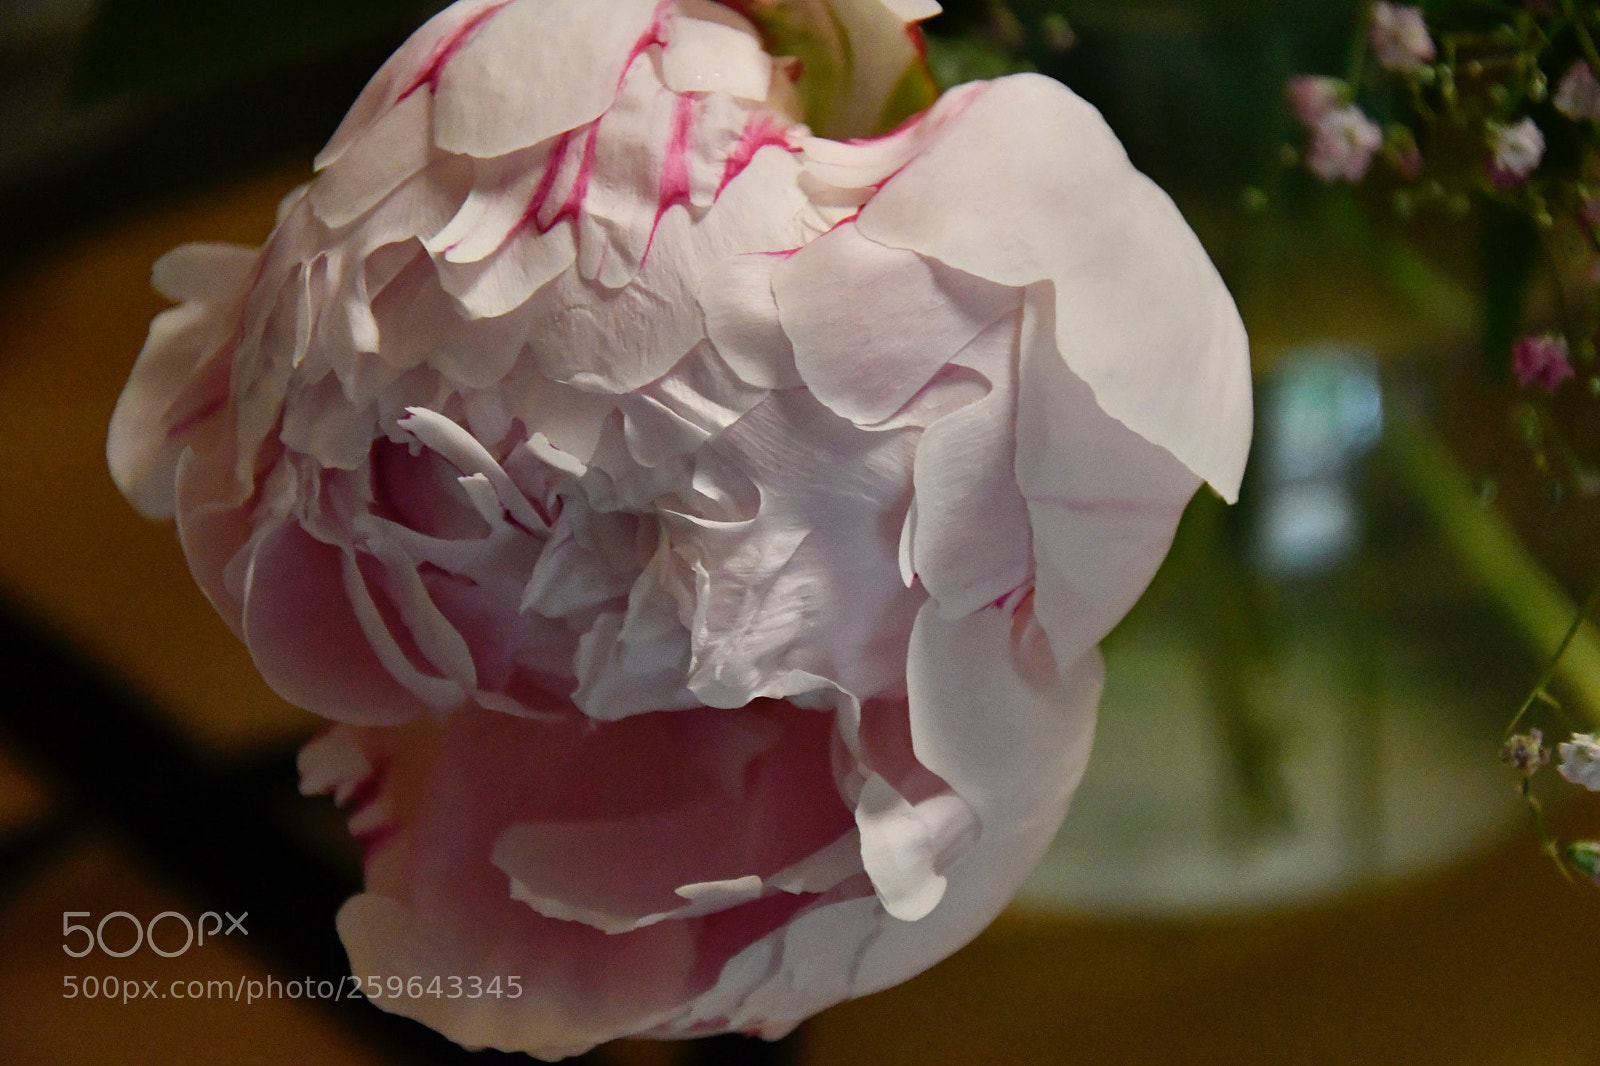 Nikon D7500 sample photo. Paeonia white rose photography